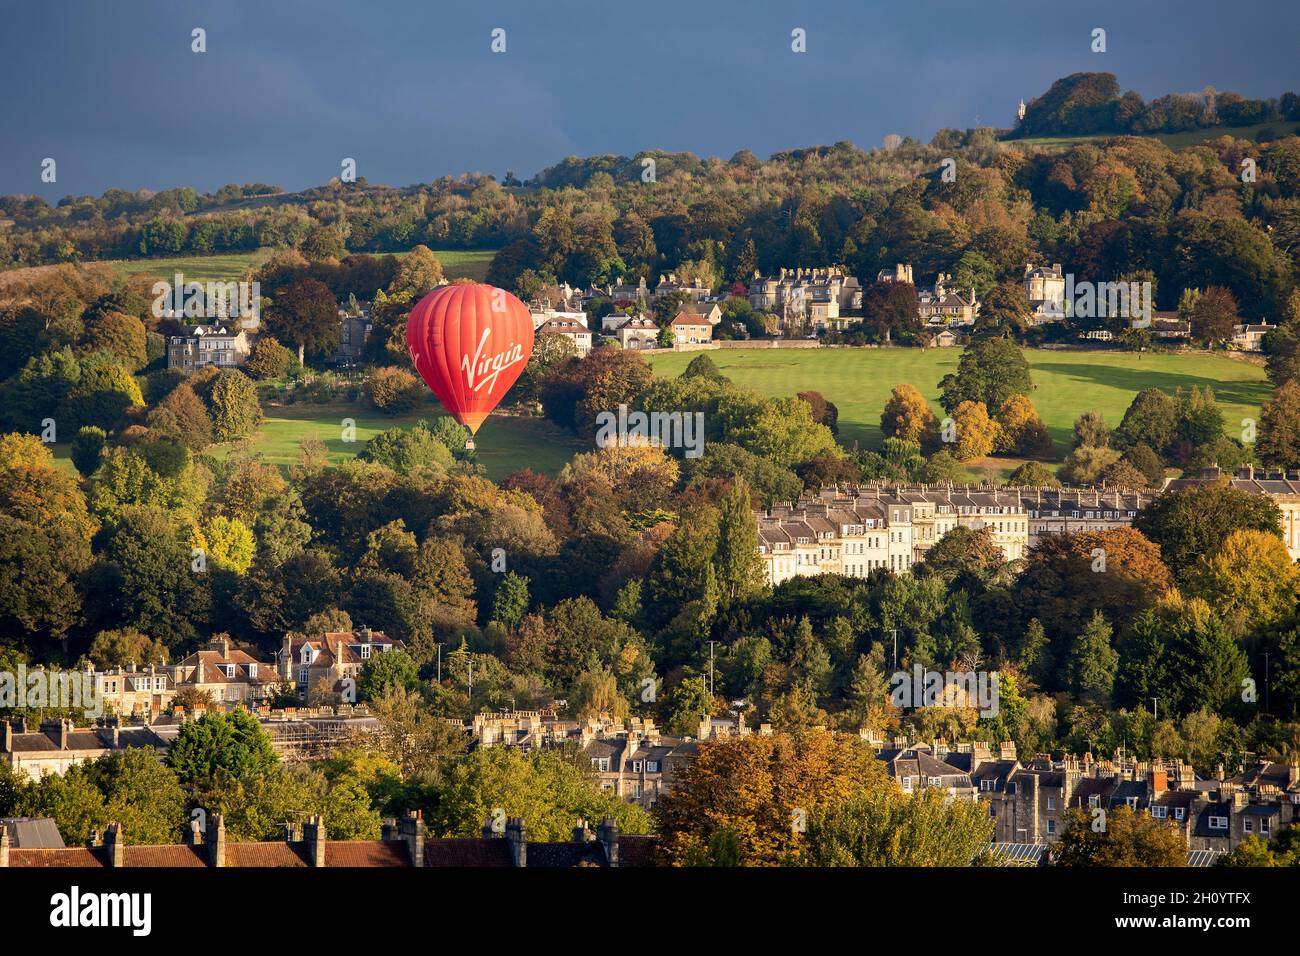 BATH, Royaume-Uni - 14 OCTOBRE 2021 : Un ballon à air chaud de la marque Virgin rouge part du parc Royal Victoria le matin automnal ensoleillé. Banque D'Images